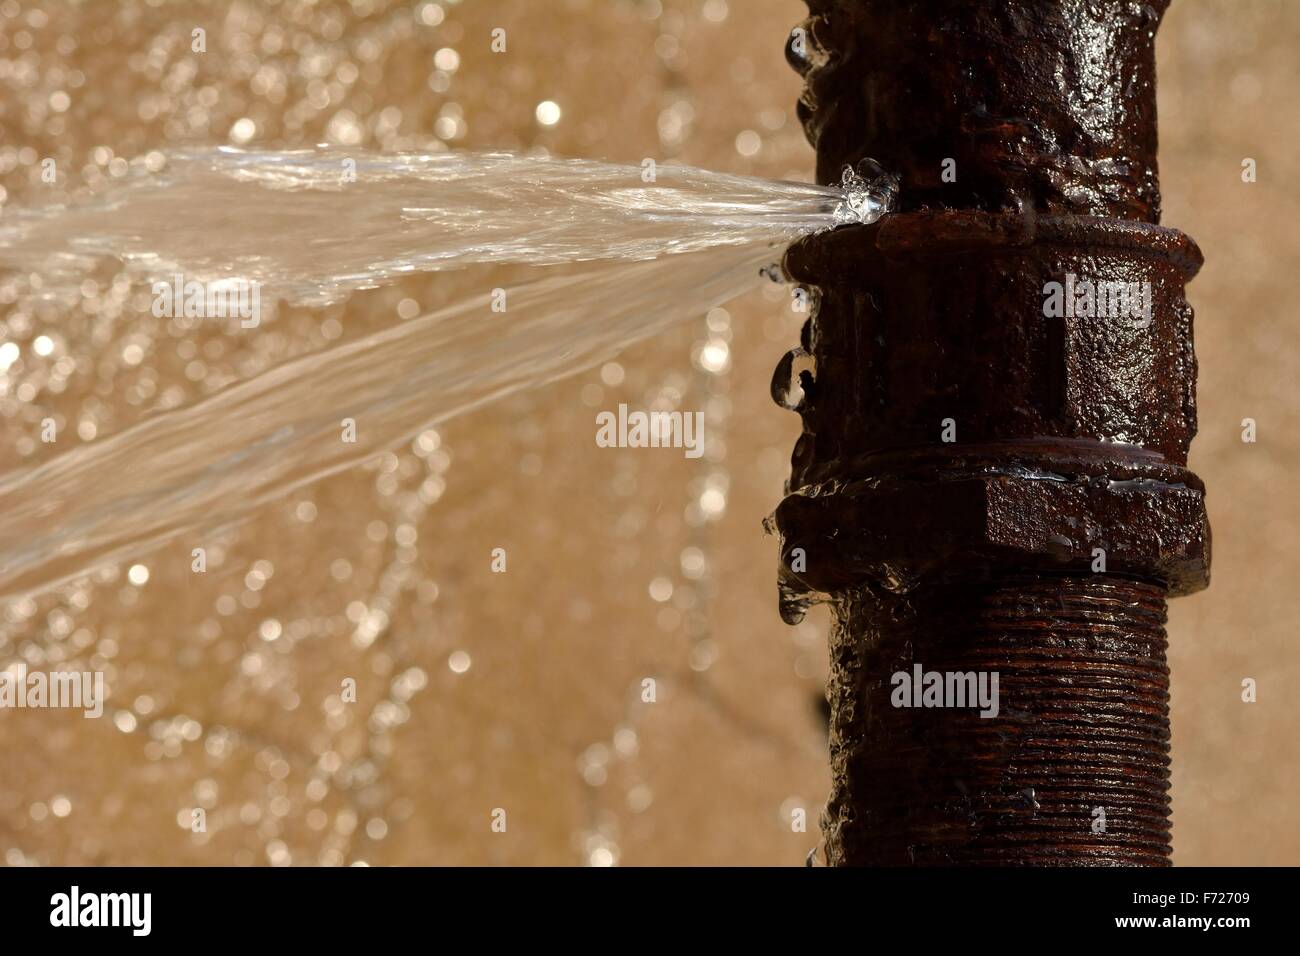 Rusty burst pipe in Baku Botanic Garden spraying water Stock Photo